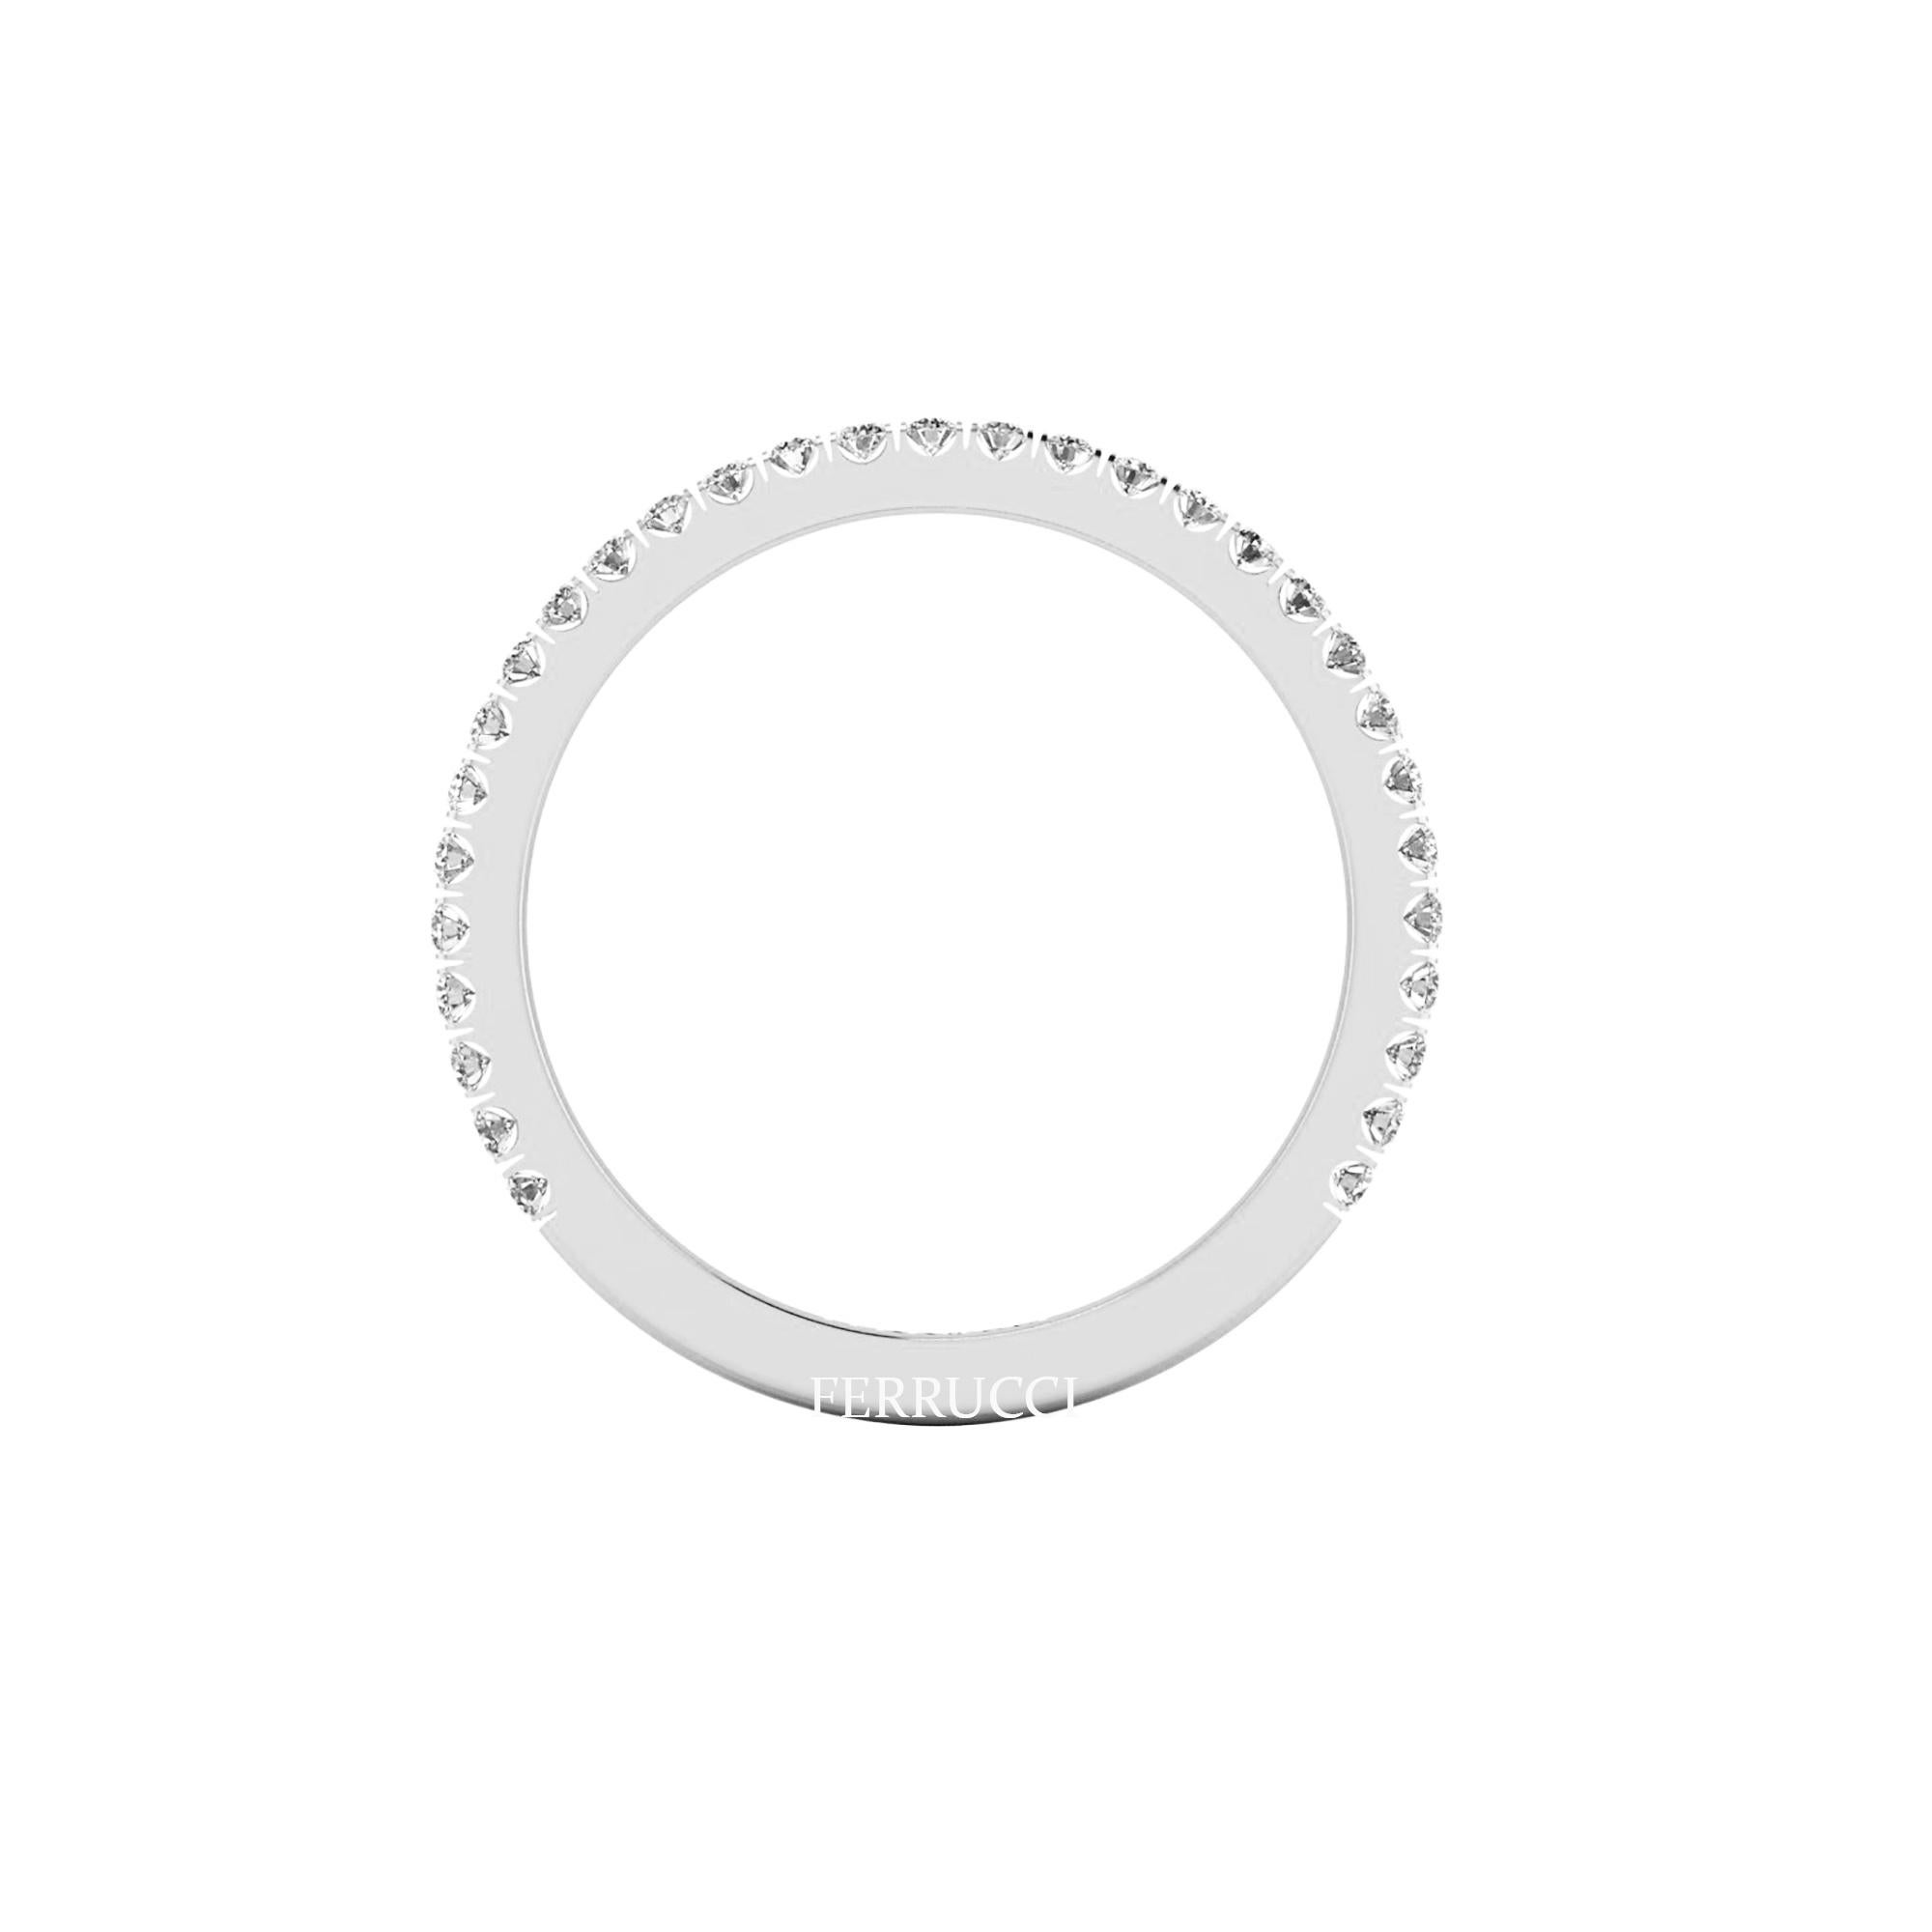 Platin 950 dünnen Band Ring, stapelbar Ringe, mit etwa 0,30 Karat weißen Diamanten G Farbe, VS Klarheit, Hand gesetzt, bequeme Passform, das Band messen 1,5 mm Breite Tragen Sie einzelne oder mehrere flache Bänder für verschiedene